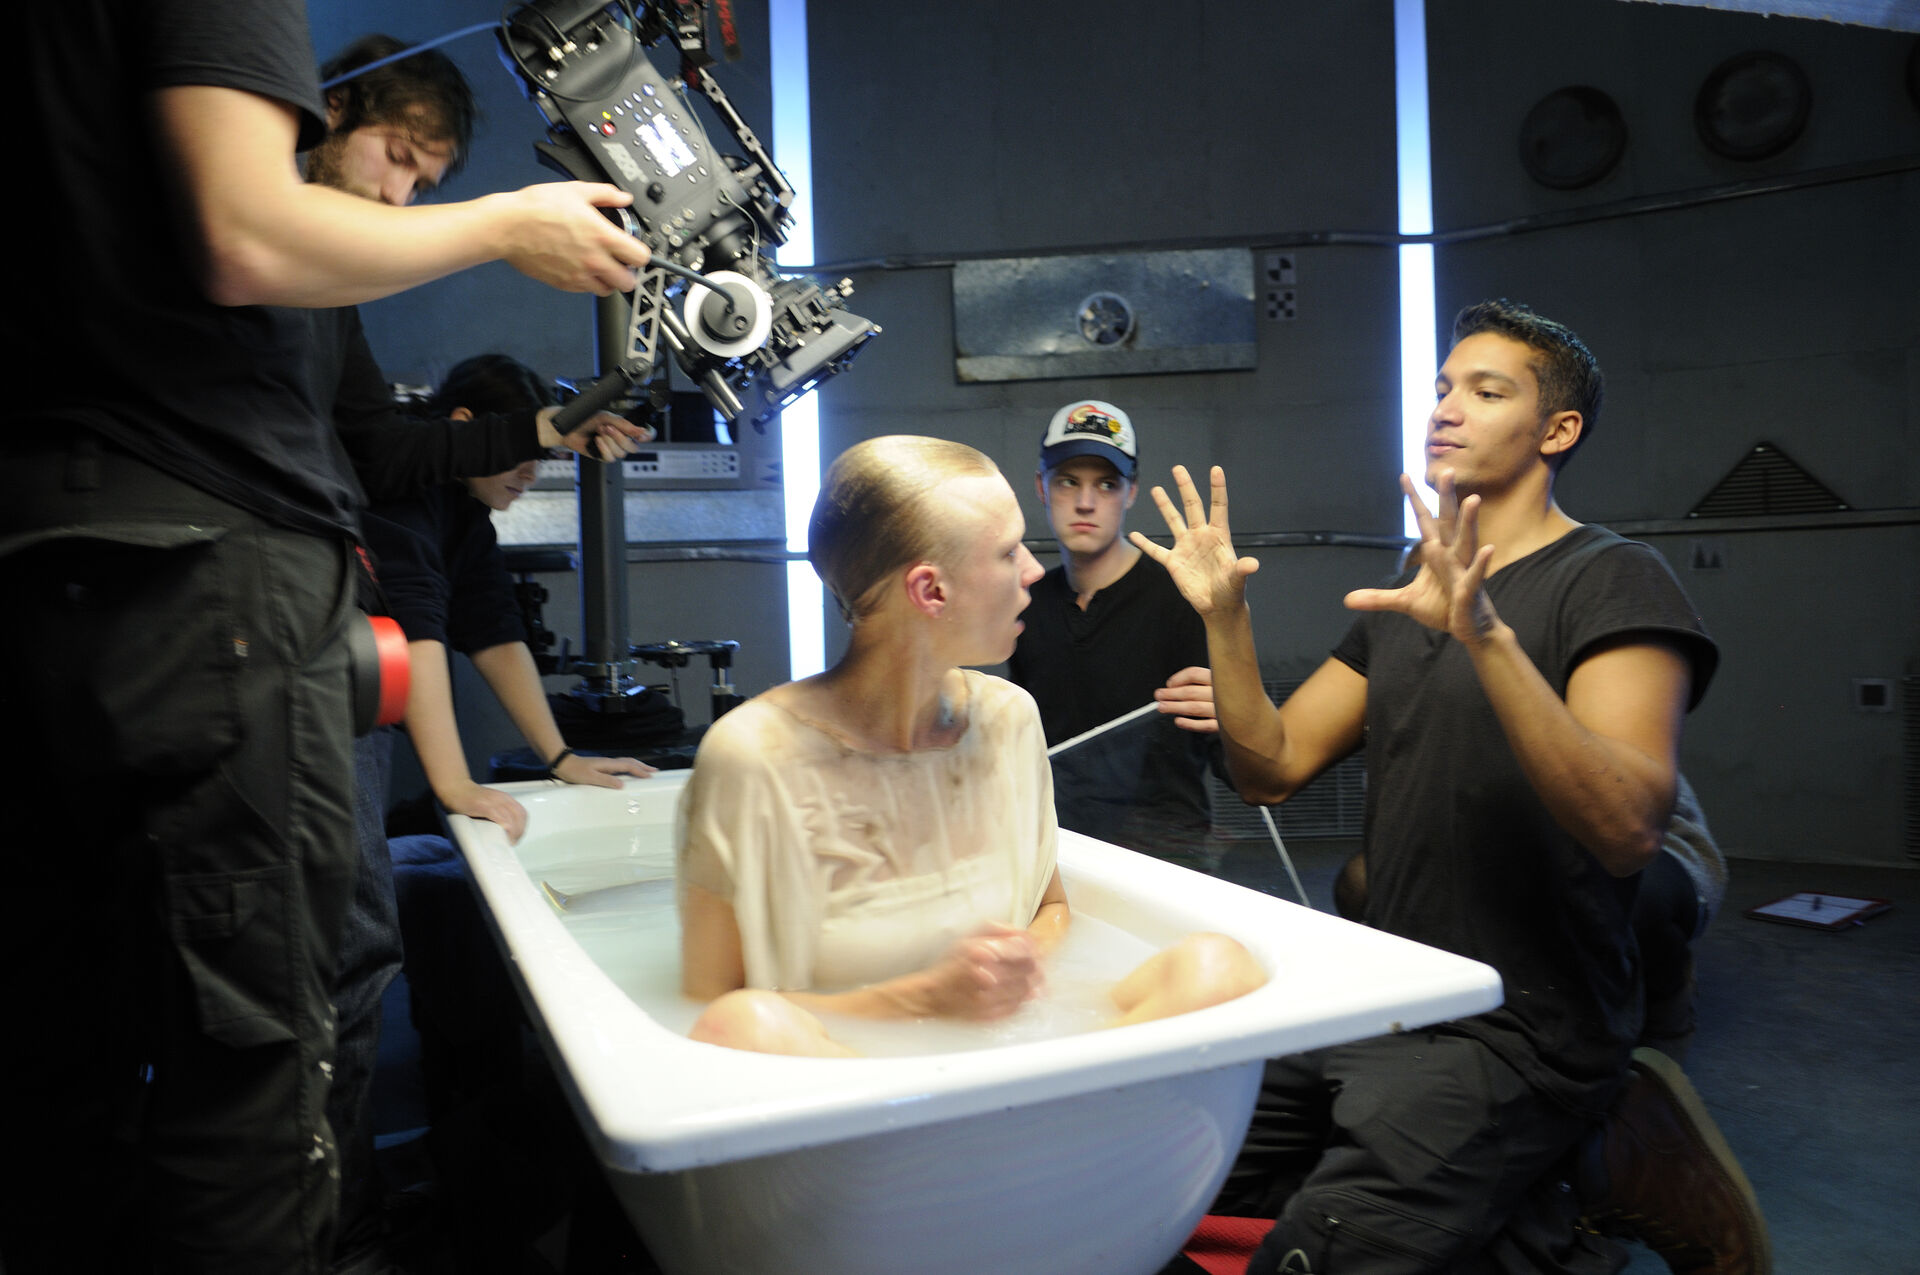 Filmskolens studenter filmer en person i et badekar i opptak i studio